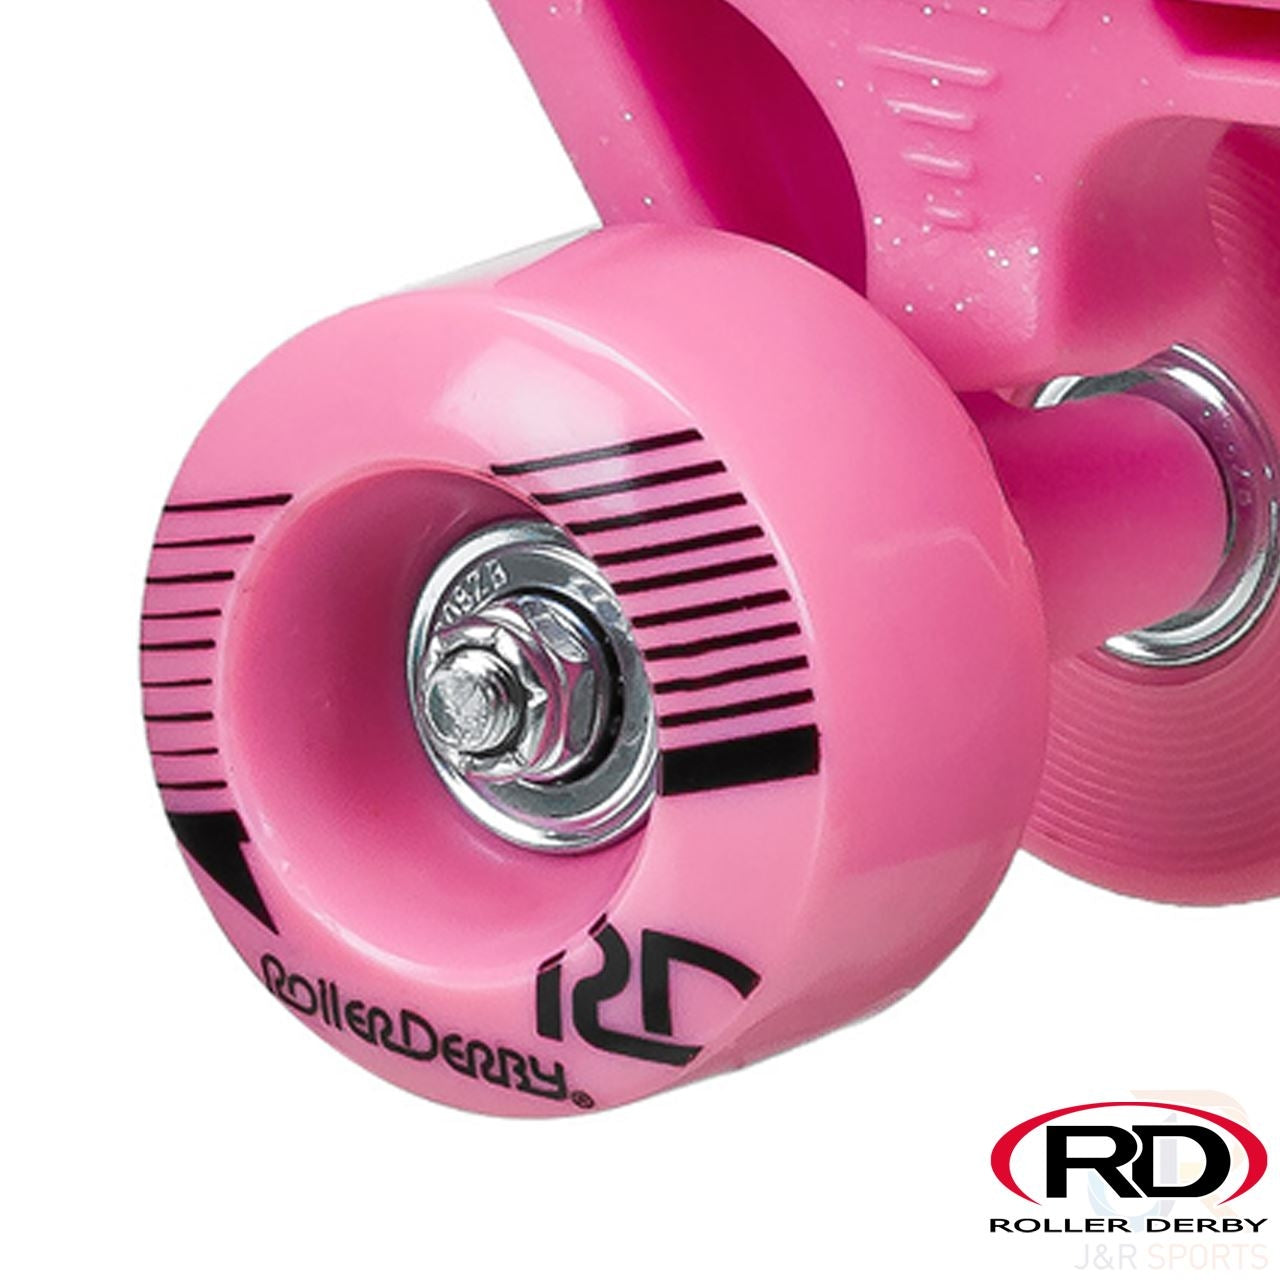 Roller Derby Firestar V2 Quad Roller Skates - Pink Camo - Wheel